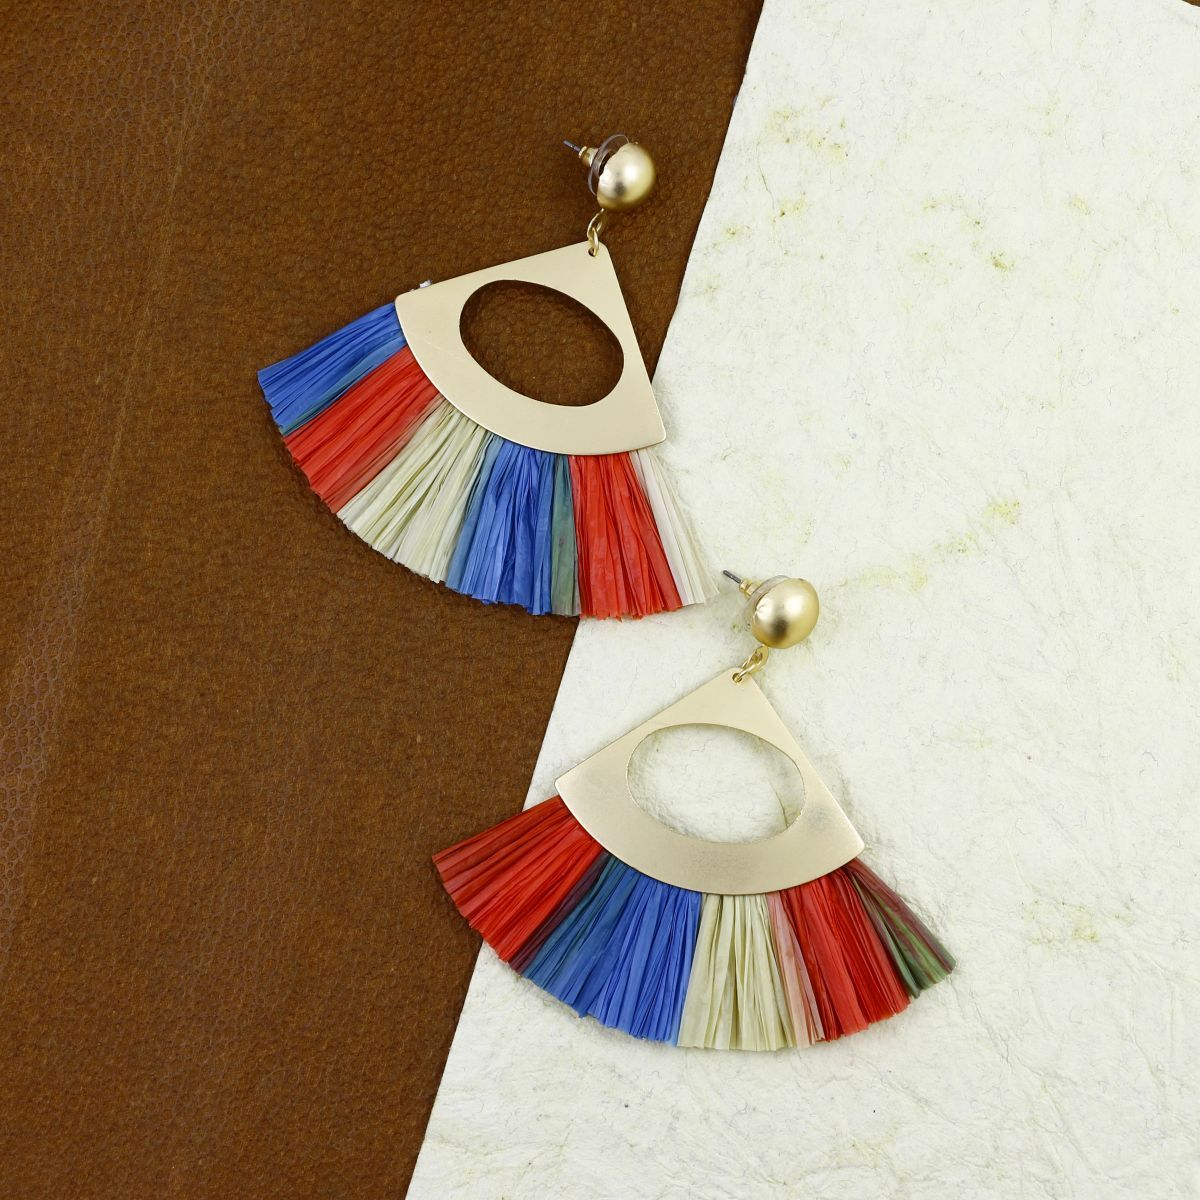 Yellow Tassel Earrings for Women | Colorful Layered Tassle 3 Tier Bohemian  Earrings | Dangle Drop Earrings for Girls Gifts - Walmart.com